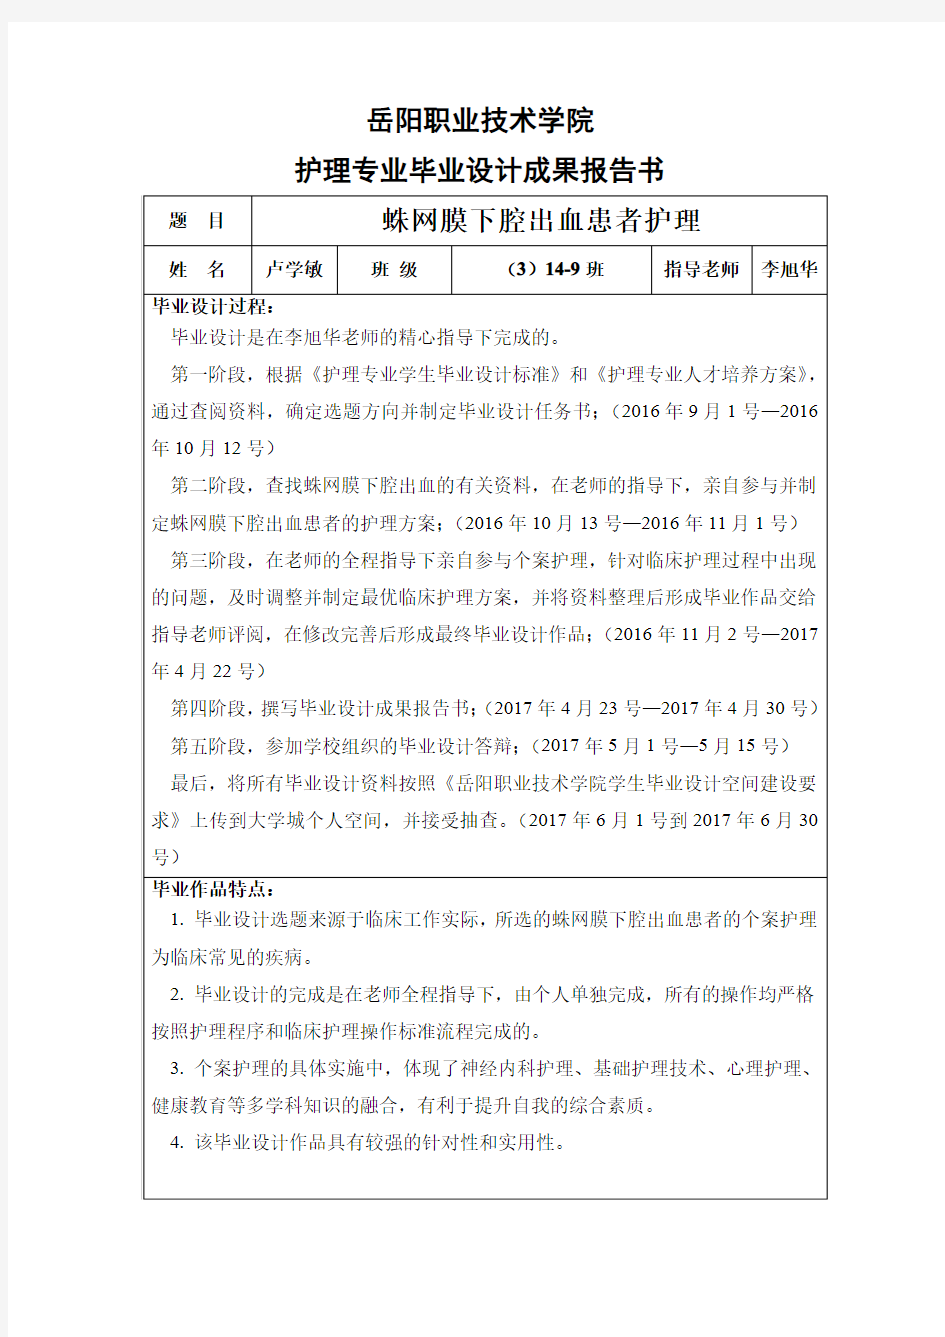 岳阳职业技术学院护理专业毕业设计成果报告书